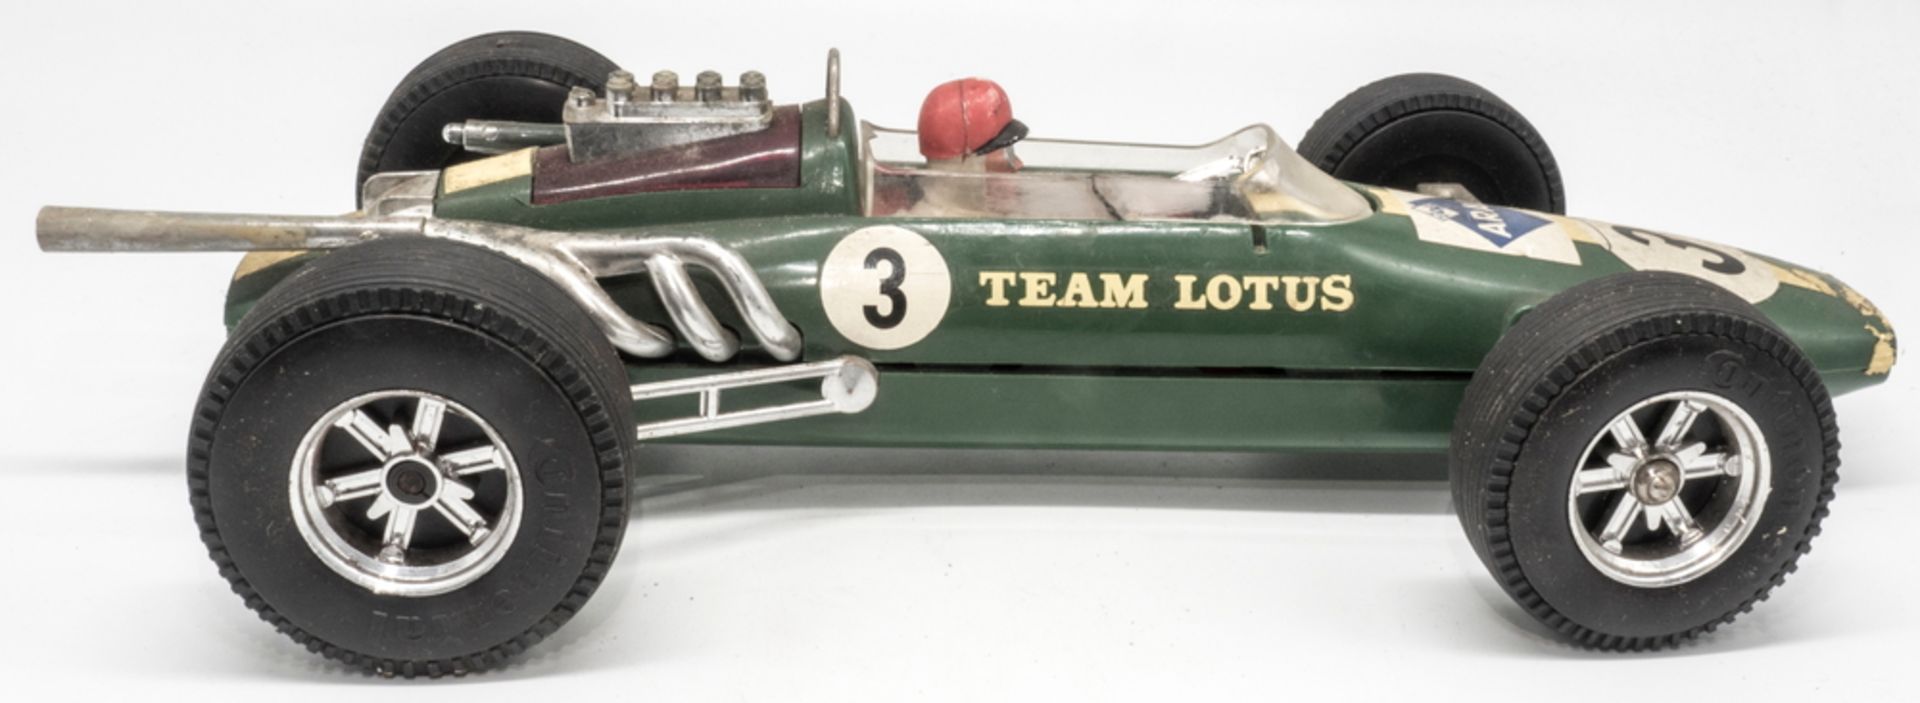 Gama Formel - Rennwagen Lotus, Maßstab: 1:16. Länge: ca. 34 cm. Friktionsantrieb. Mit Fehlteilen. - Image 3 of 6